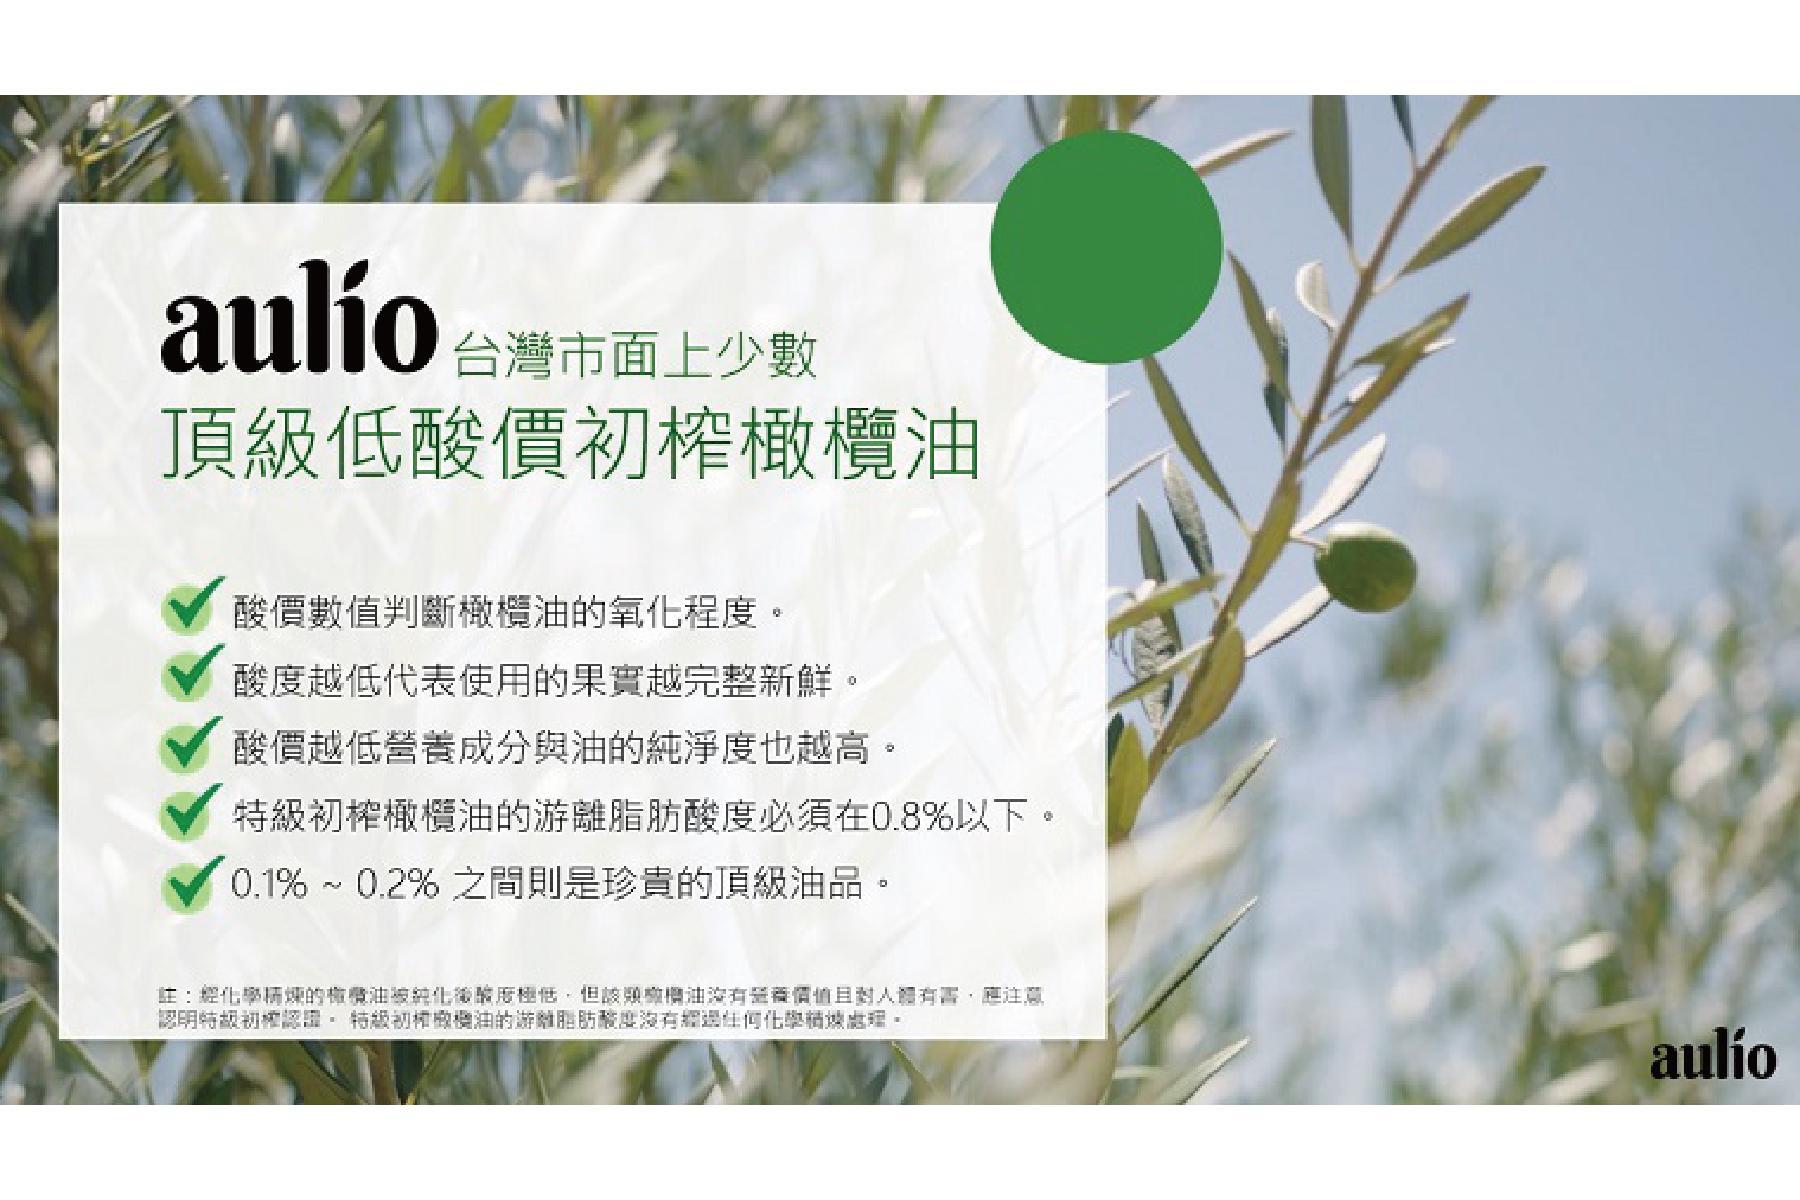 【aulio】澳洲天然特級初榨橄欖油4瓶 提貨券3